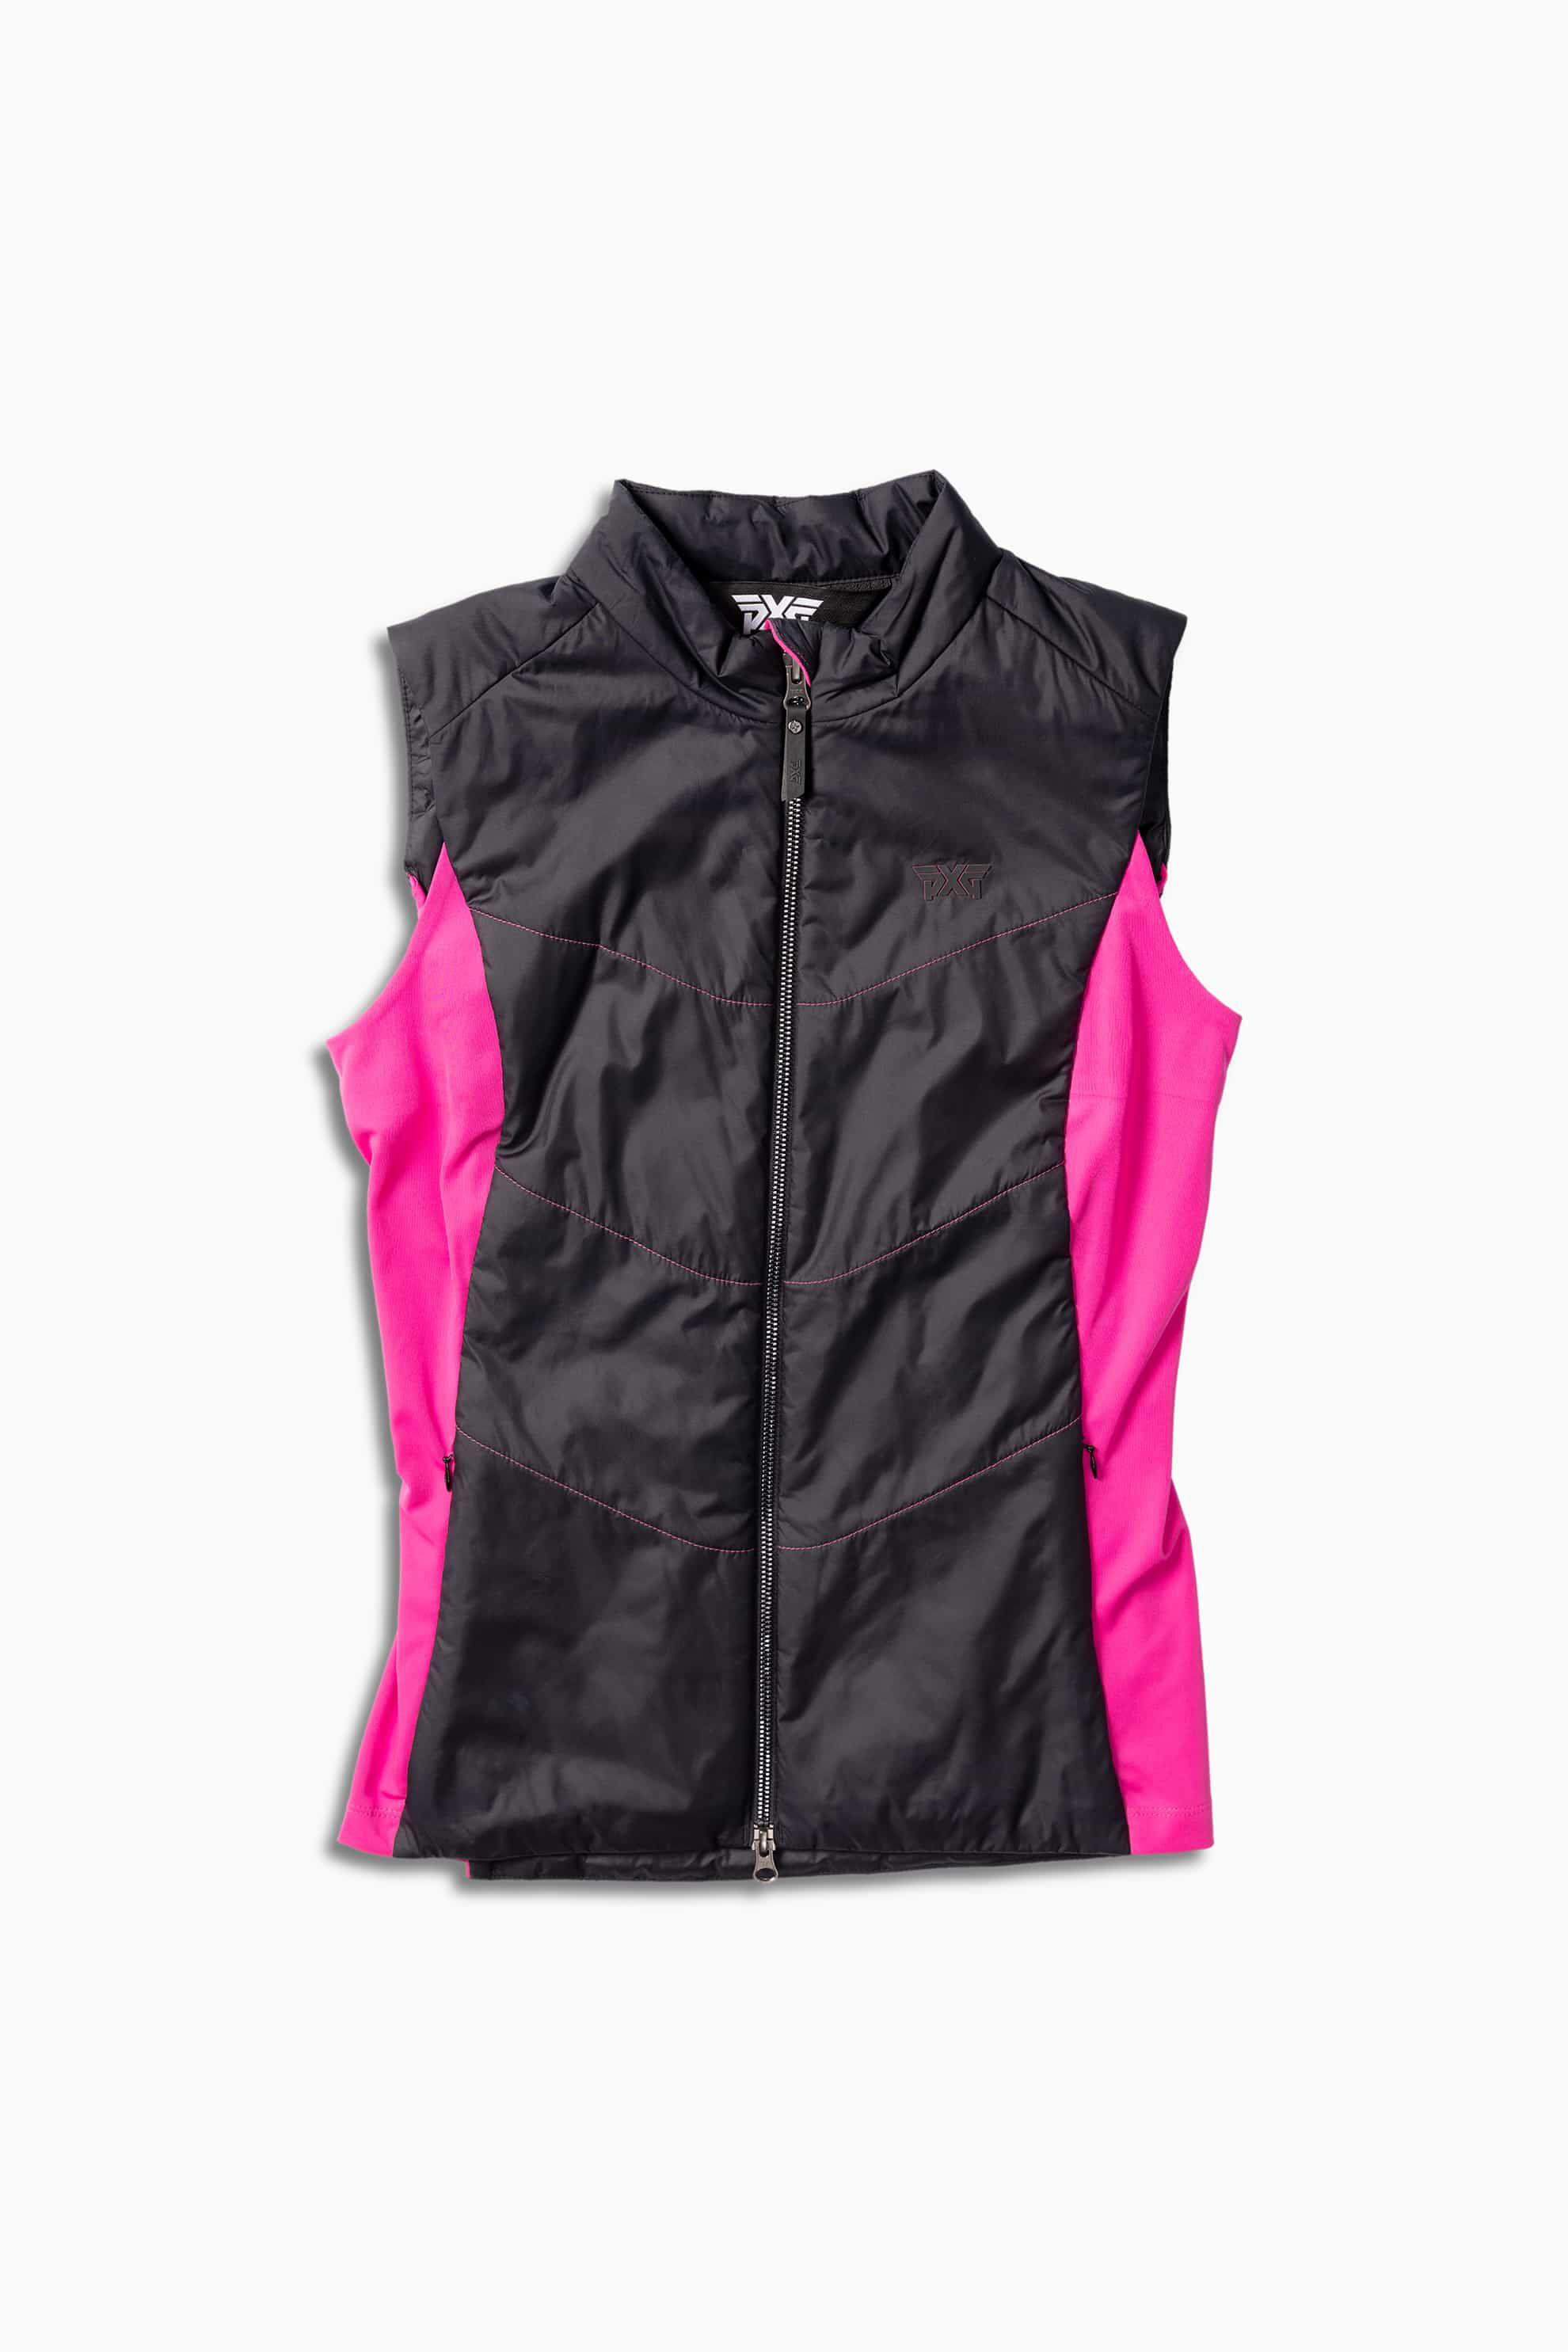 Shop Women's Golf ベスト - Full Zip Vests and More | PXG JP